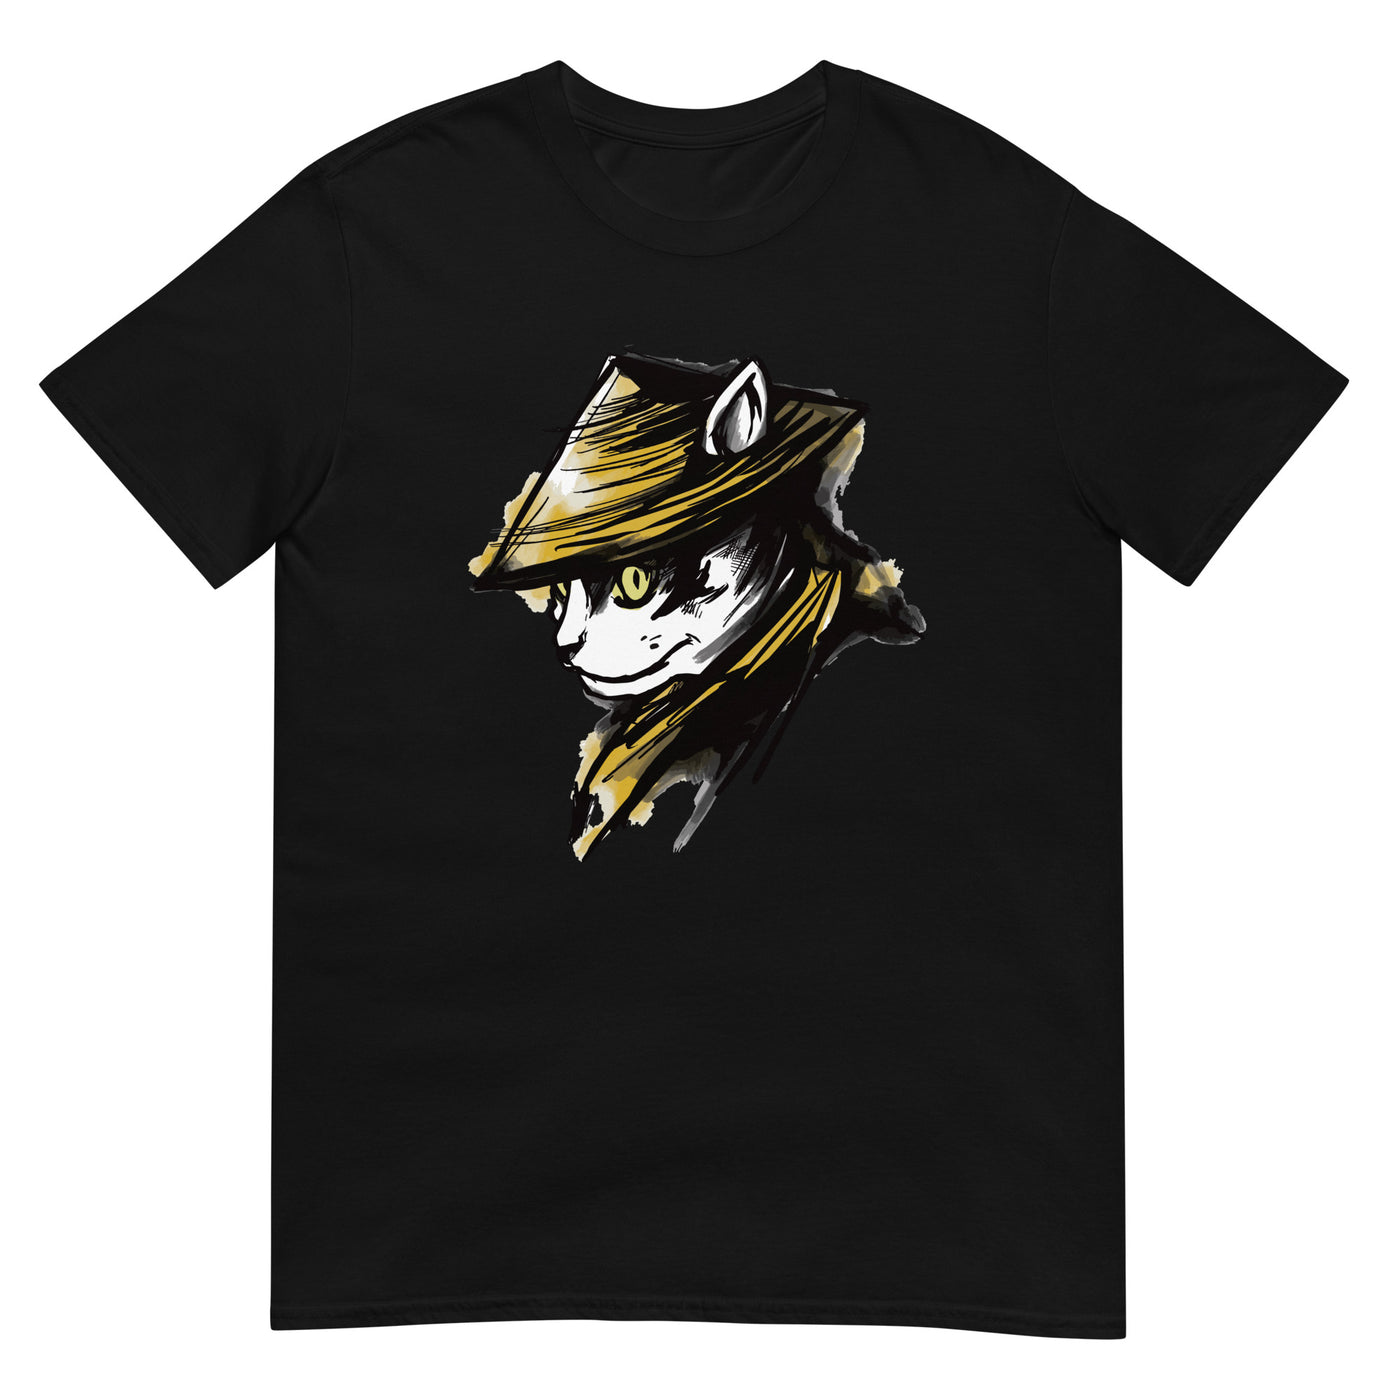 Katzen-Samurai - Gesichtsporträt eines coolen, motivierenden Katzenkriegers - Herren T-Shirt Other_Niches xxx yyy zzz Black